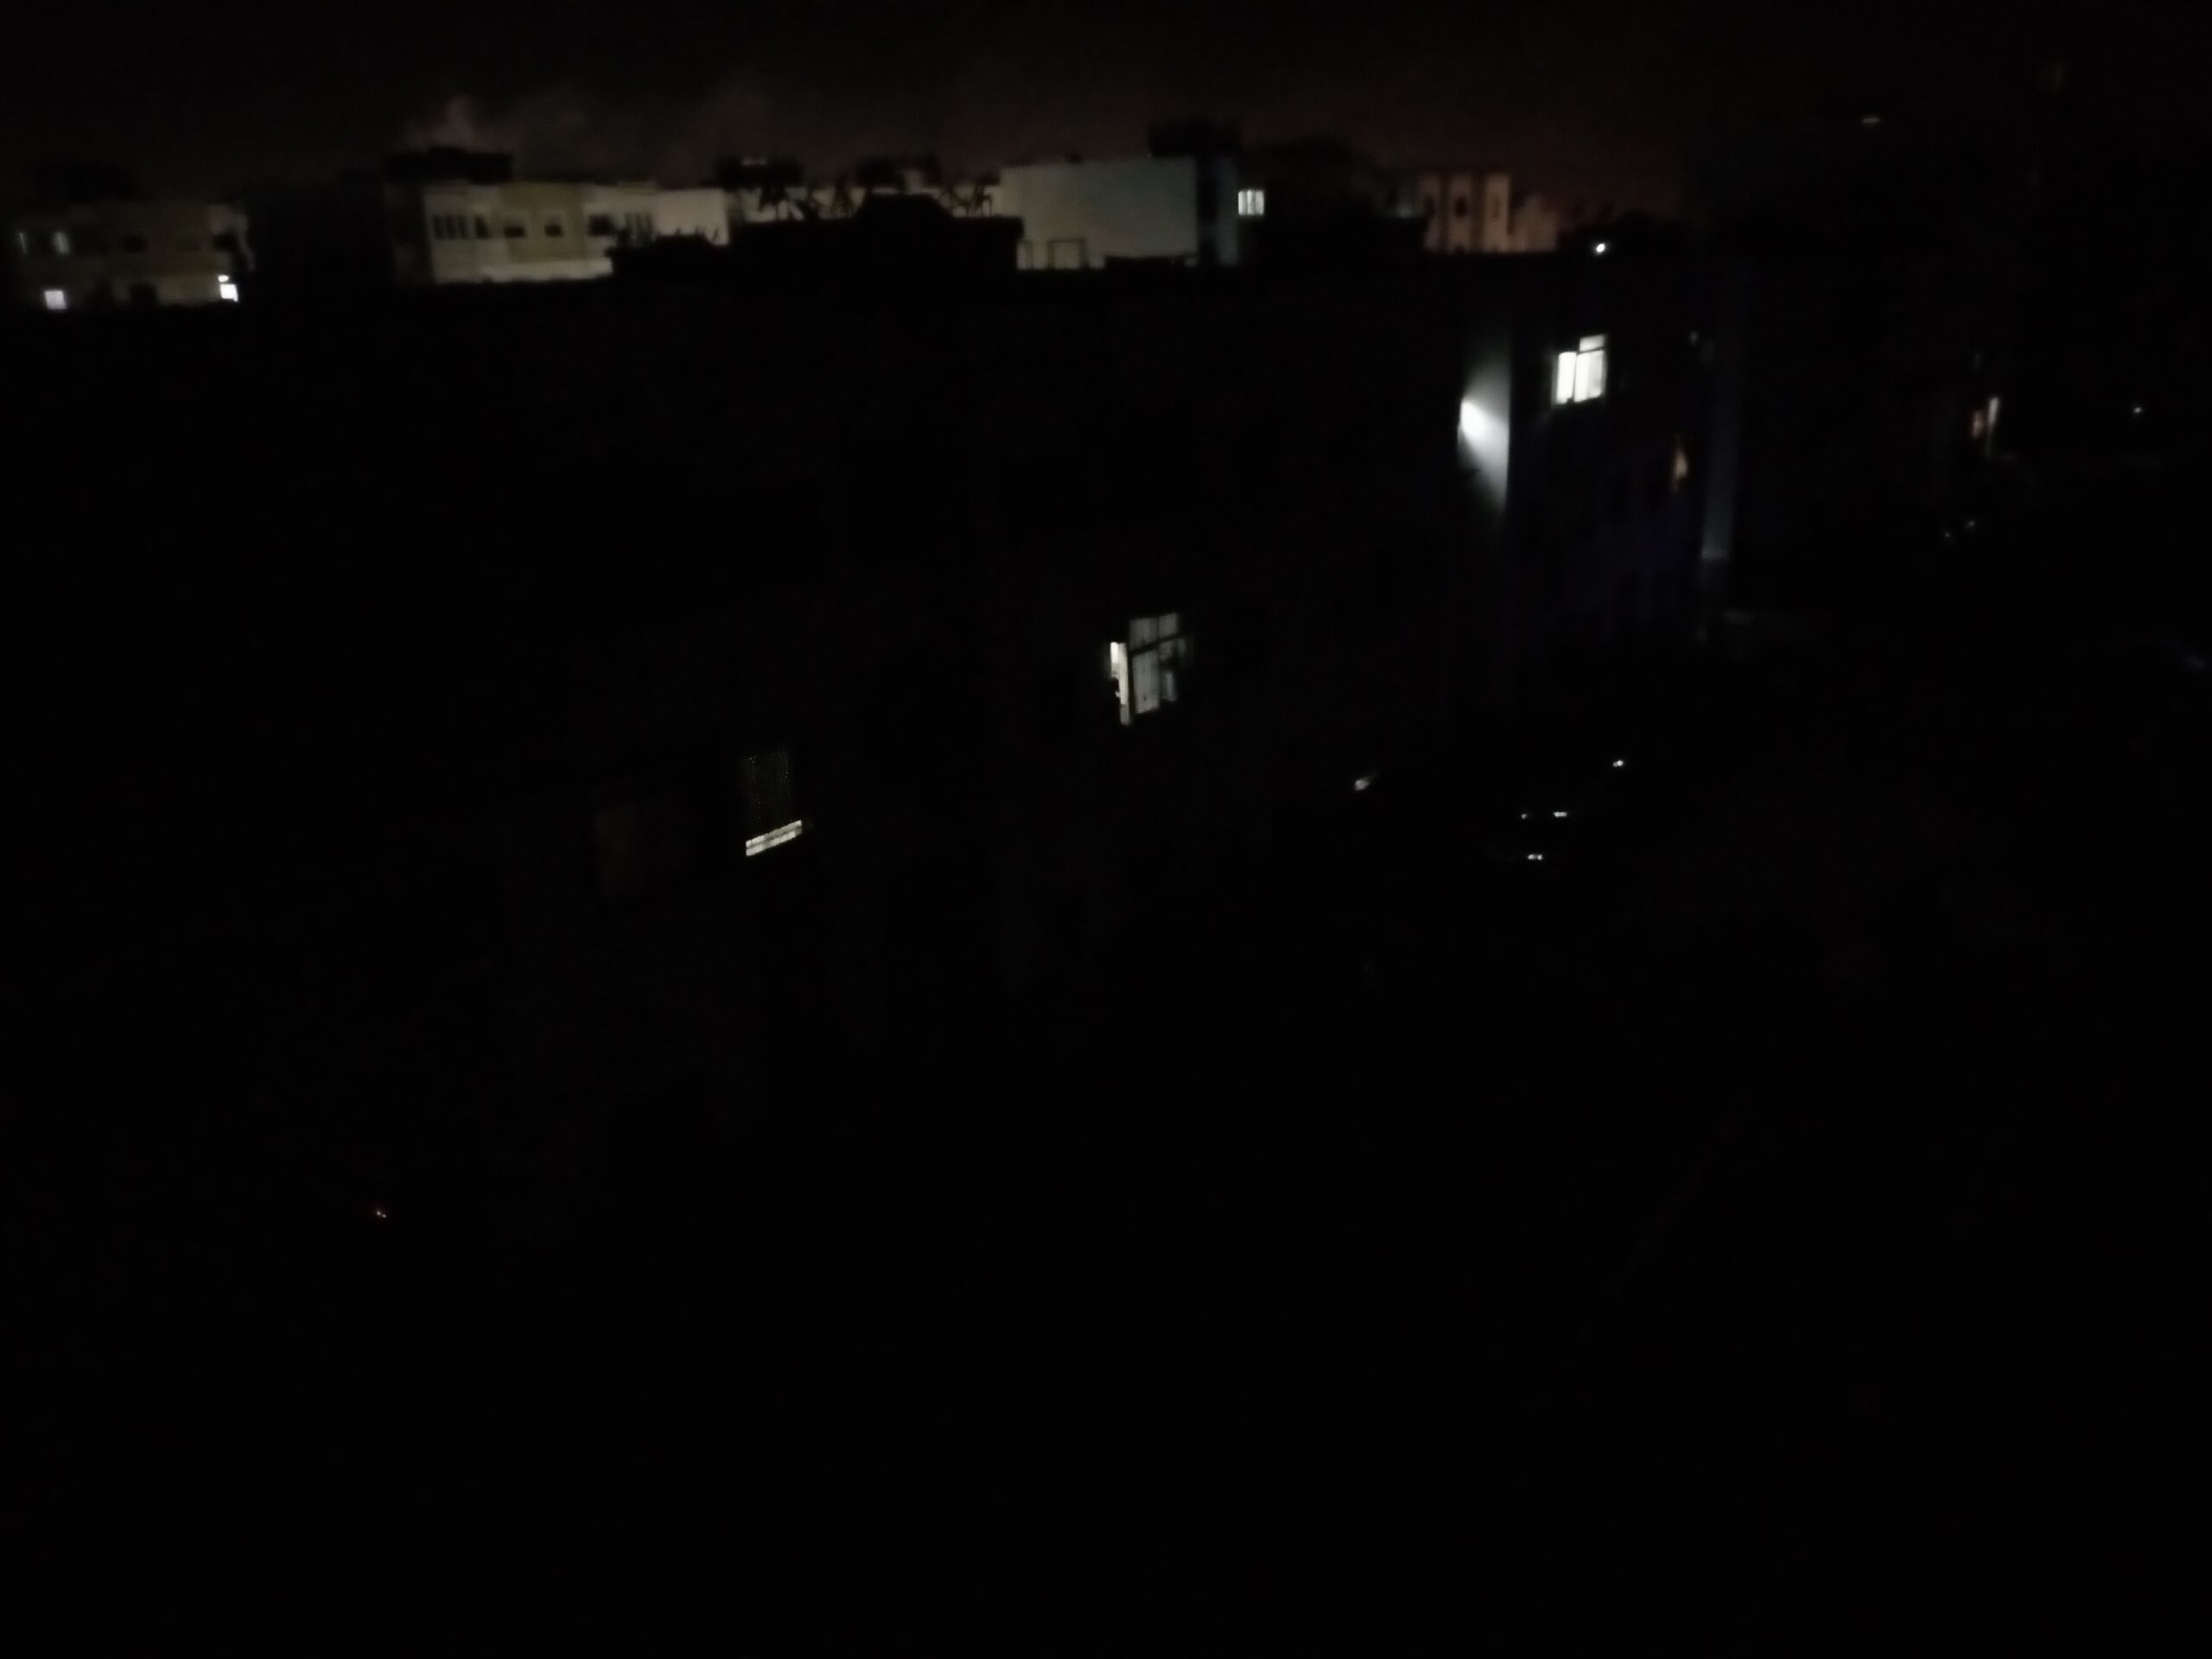 إنقطاع التيار الكهربائي بدون سابق إنذار بشوارع بمنطقة العيايدة بسلا